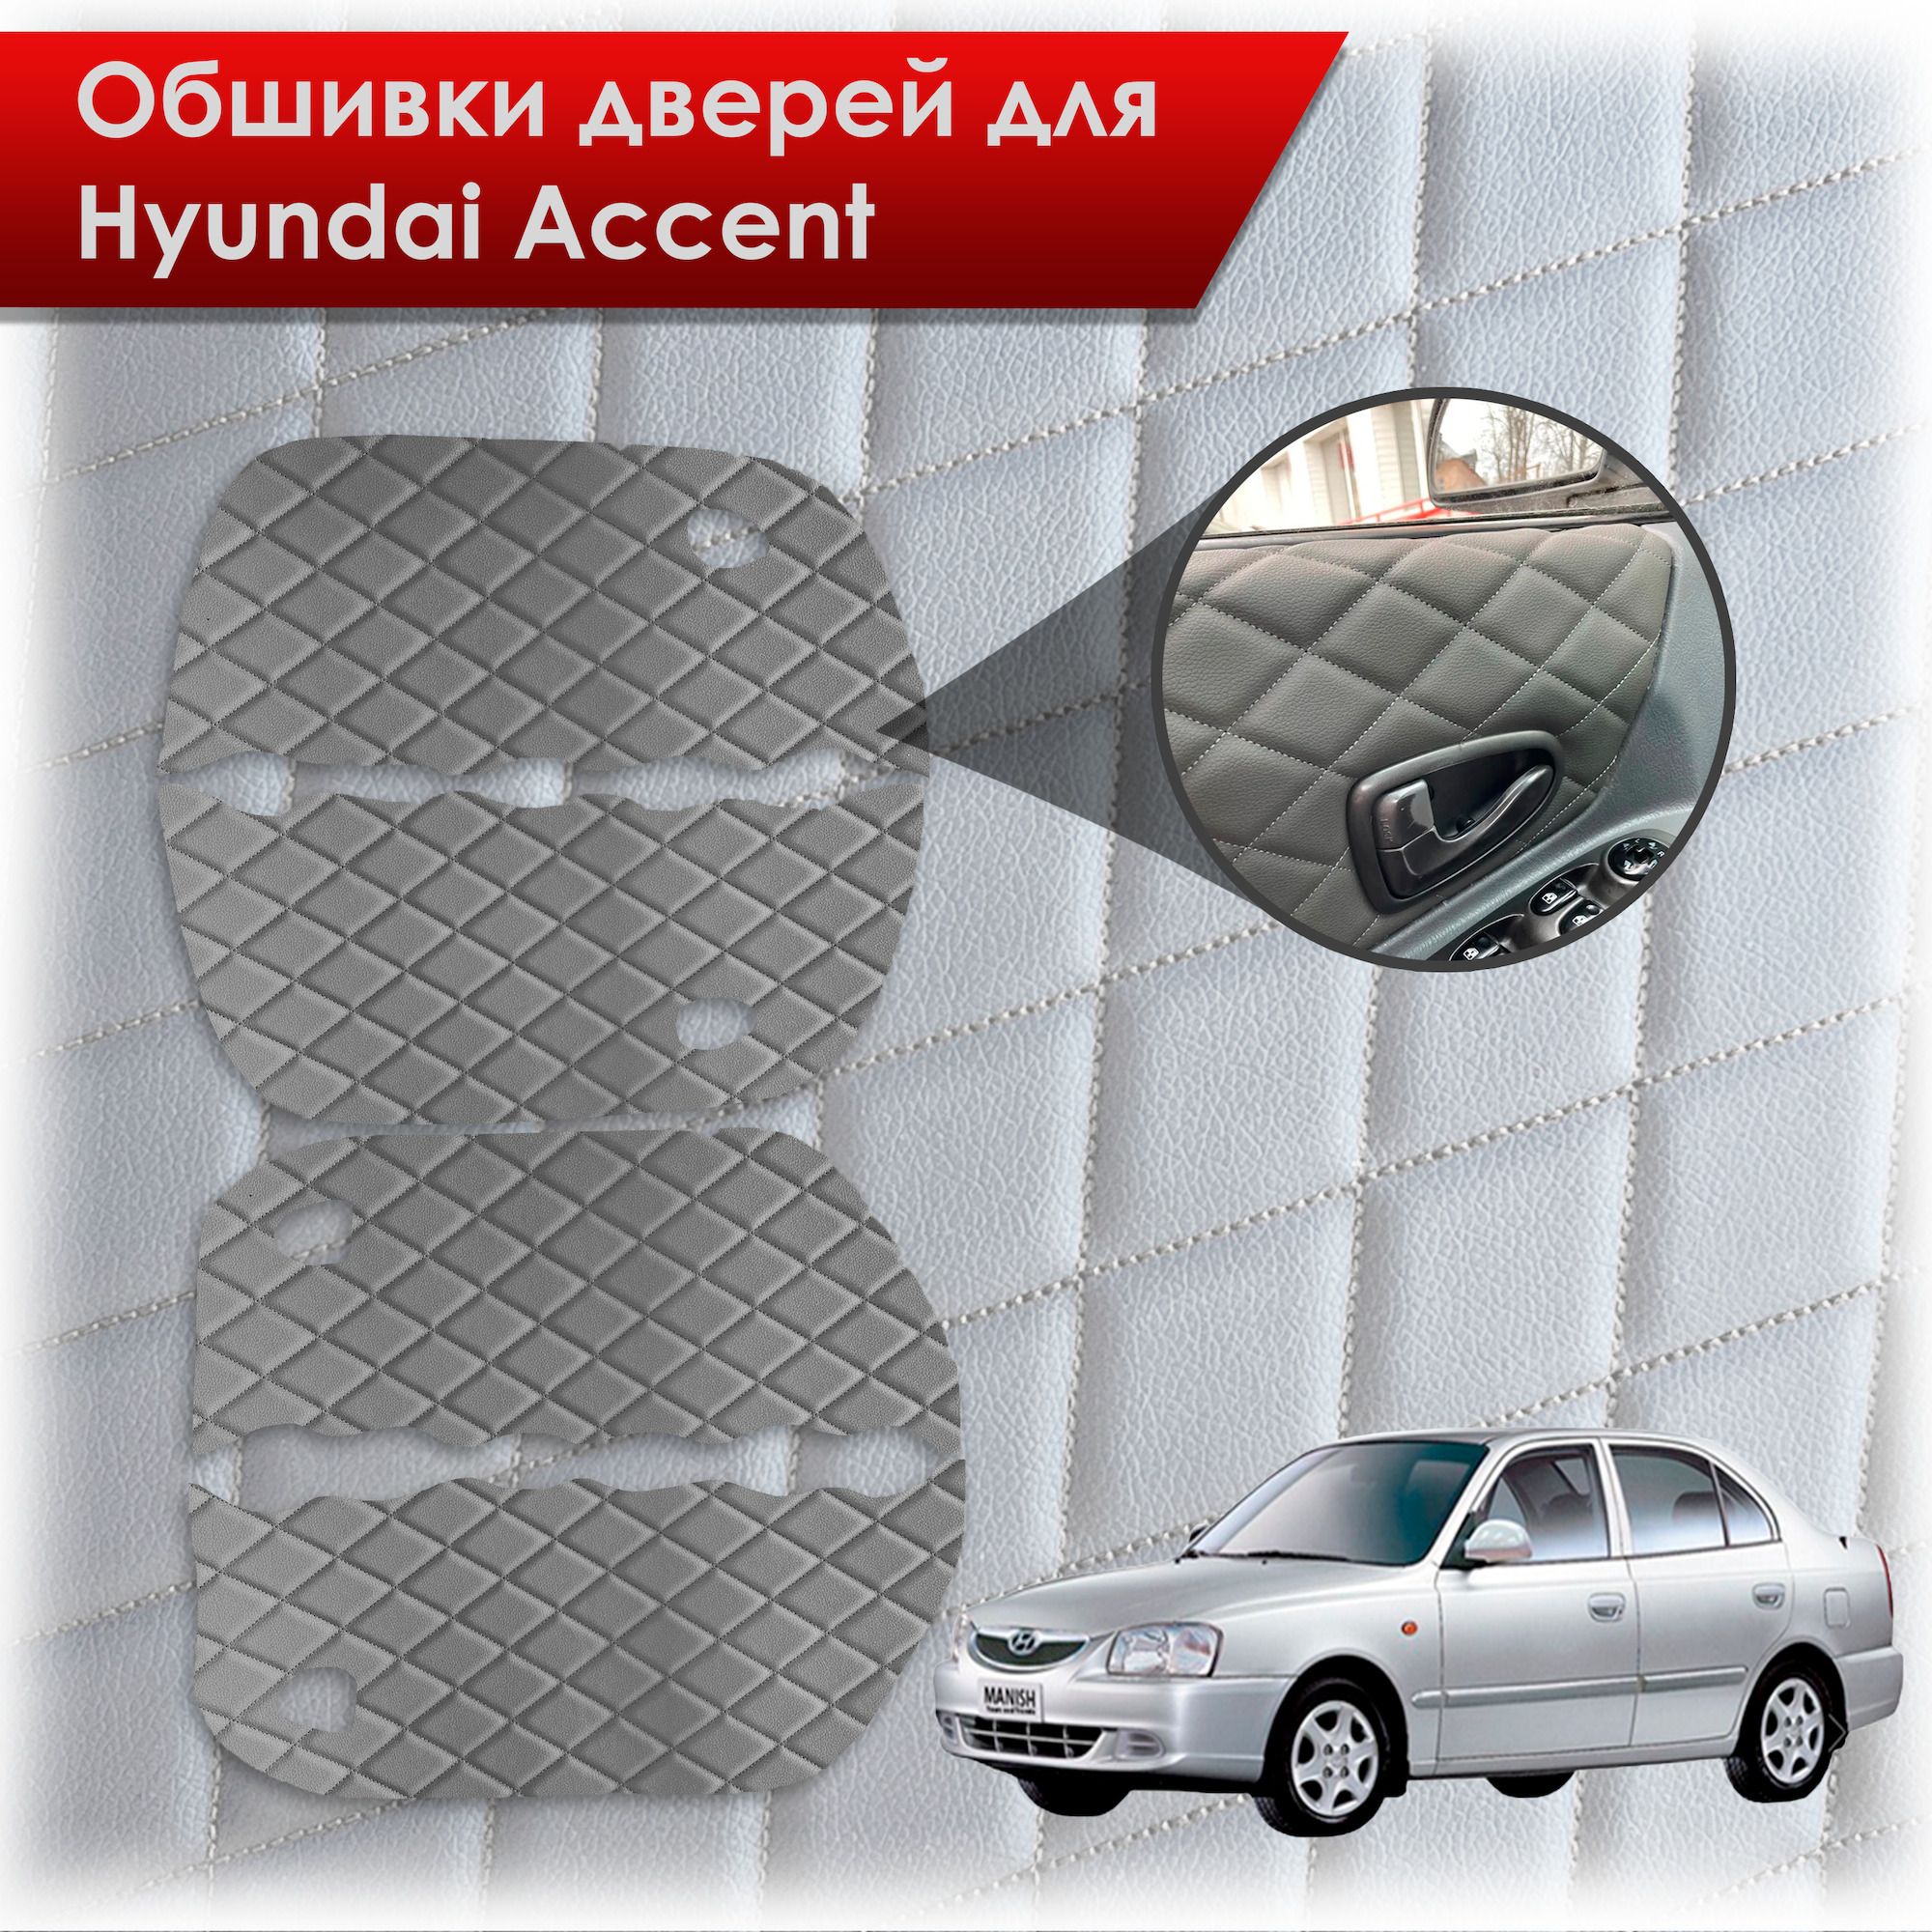 Как снять обшивку двери Hyundai Accent Tagaz?